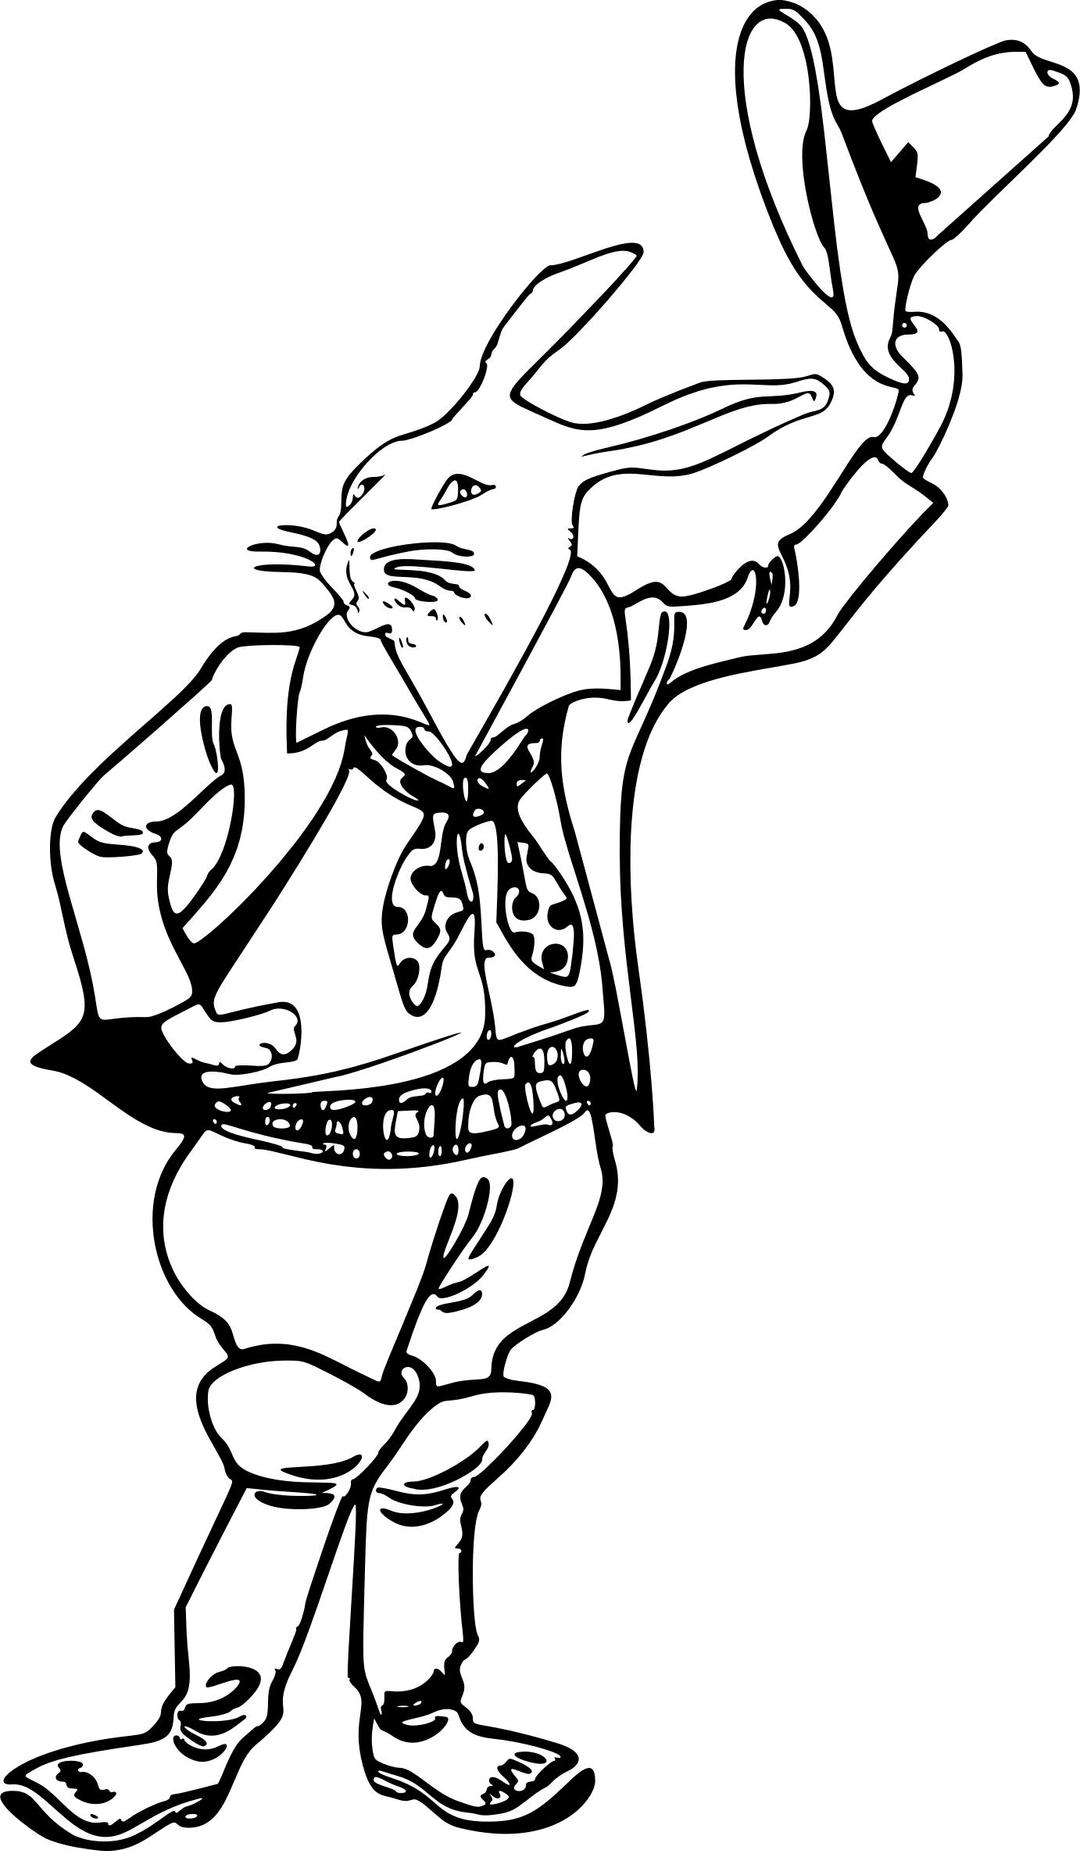 Rabbit Cowboy No Cigar png transparent